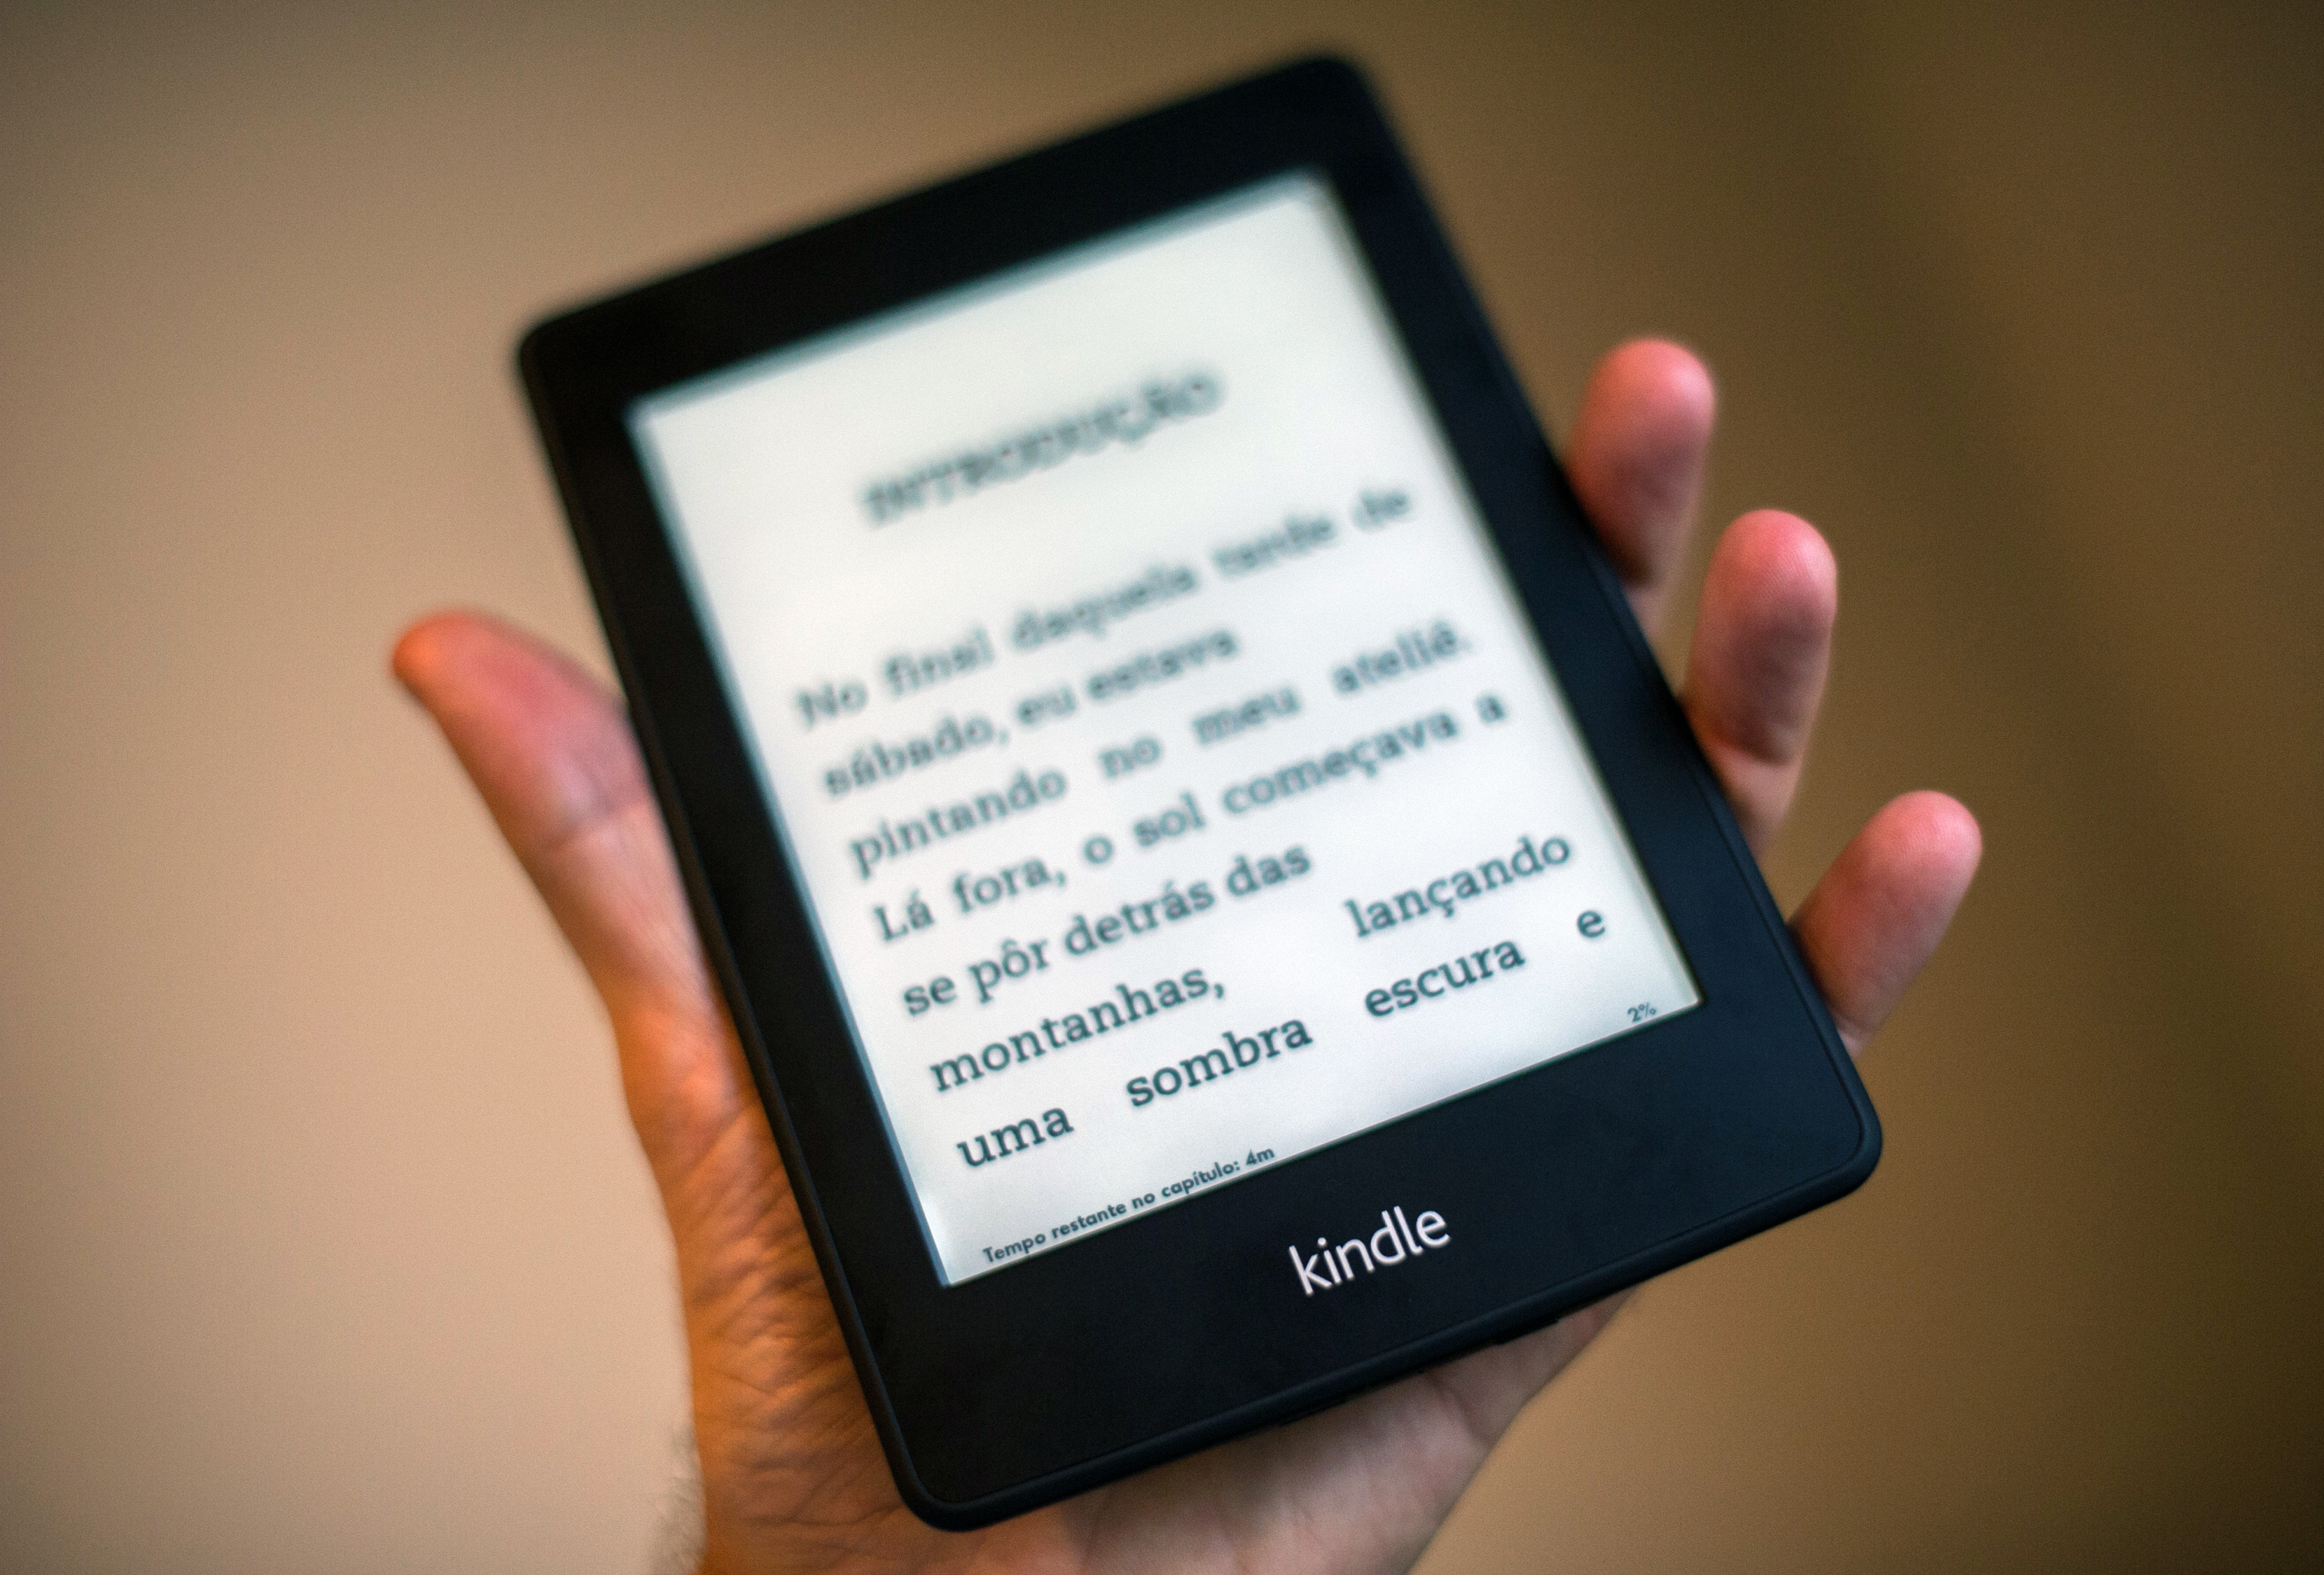 亚马逊为 Kindle 更新系统 界面焕然一新